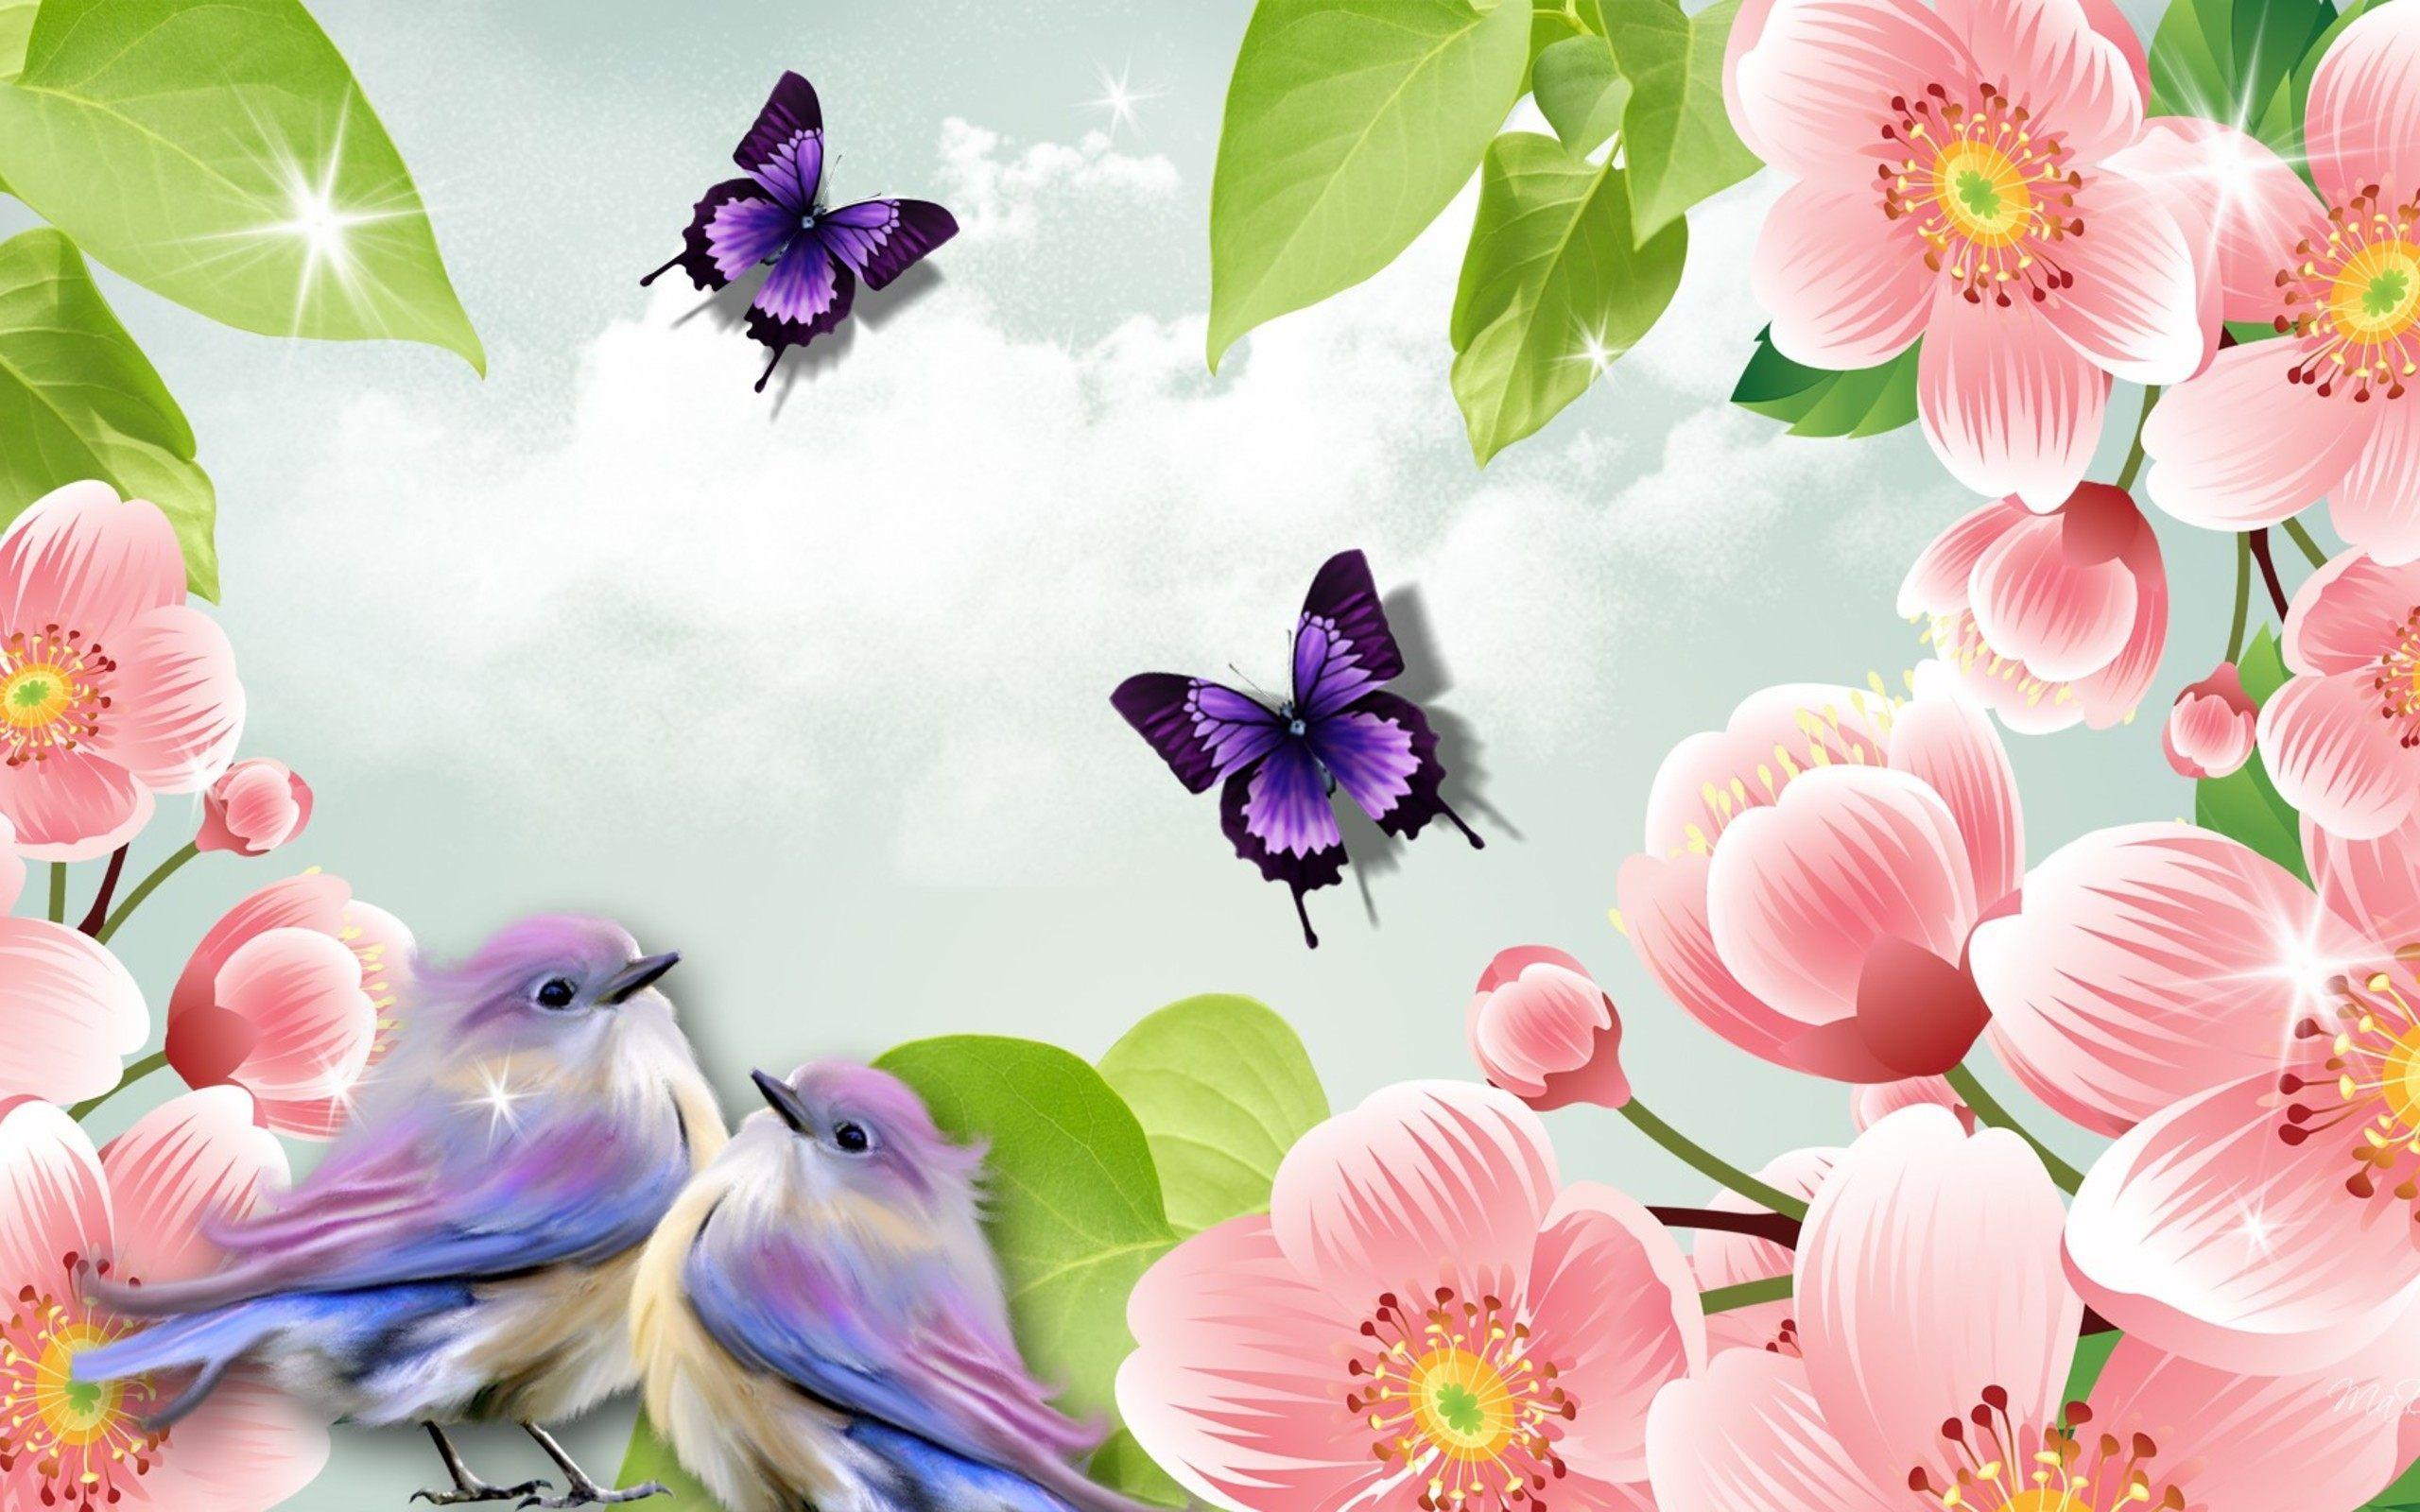 Birds And Flowers Desktop Wallpapers Top Free Birds And Flowers Desktop Backgrounds Wallpaperaccess